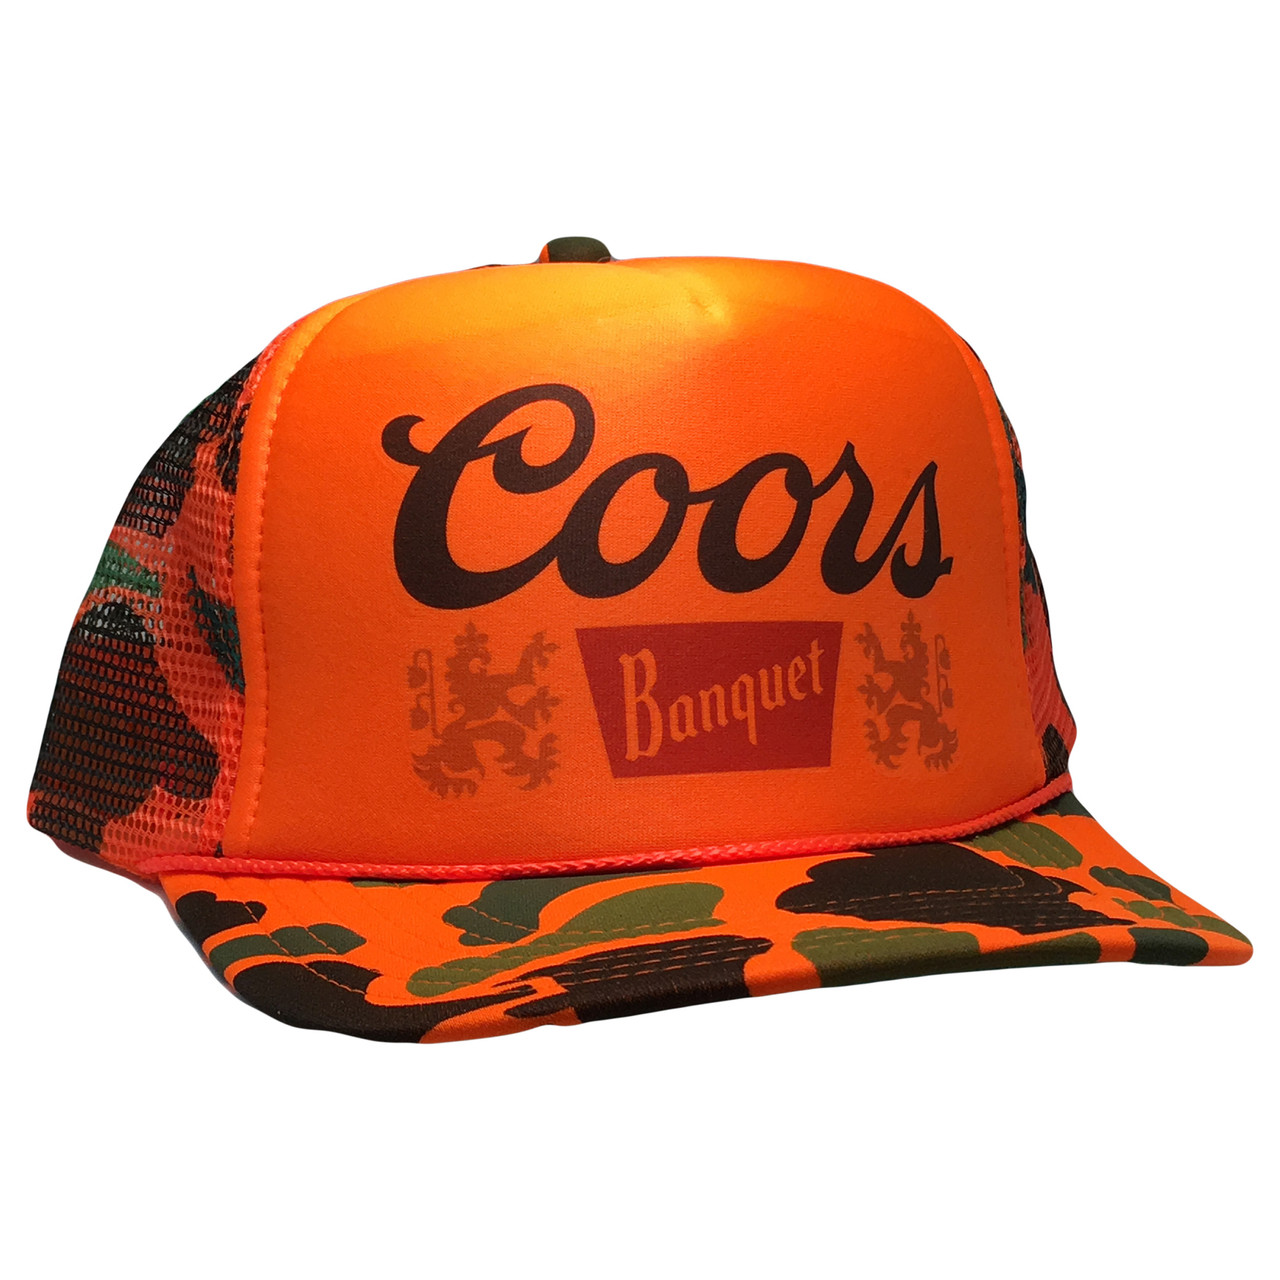 Coors Beer Hat Trucker Cap, Coors beer hat, Coors hat,Trucker Hat, Beer Hats